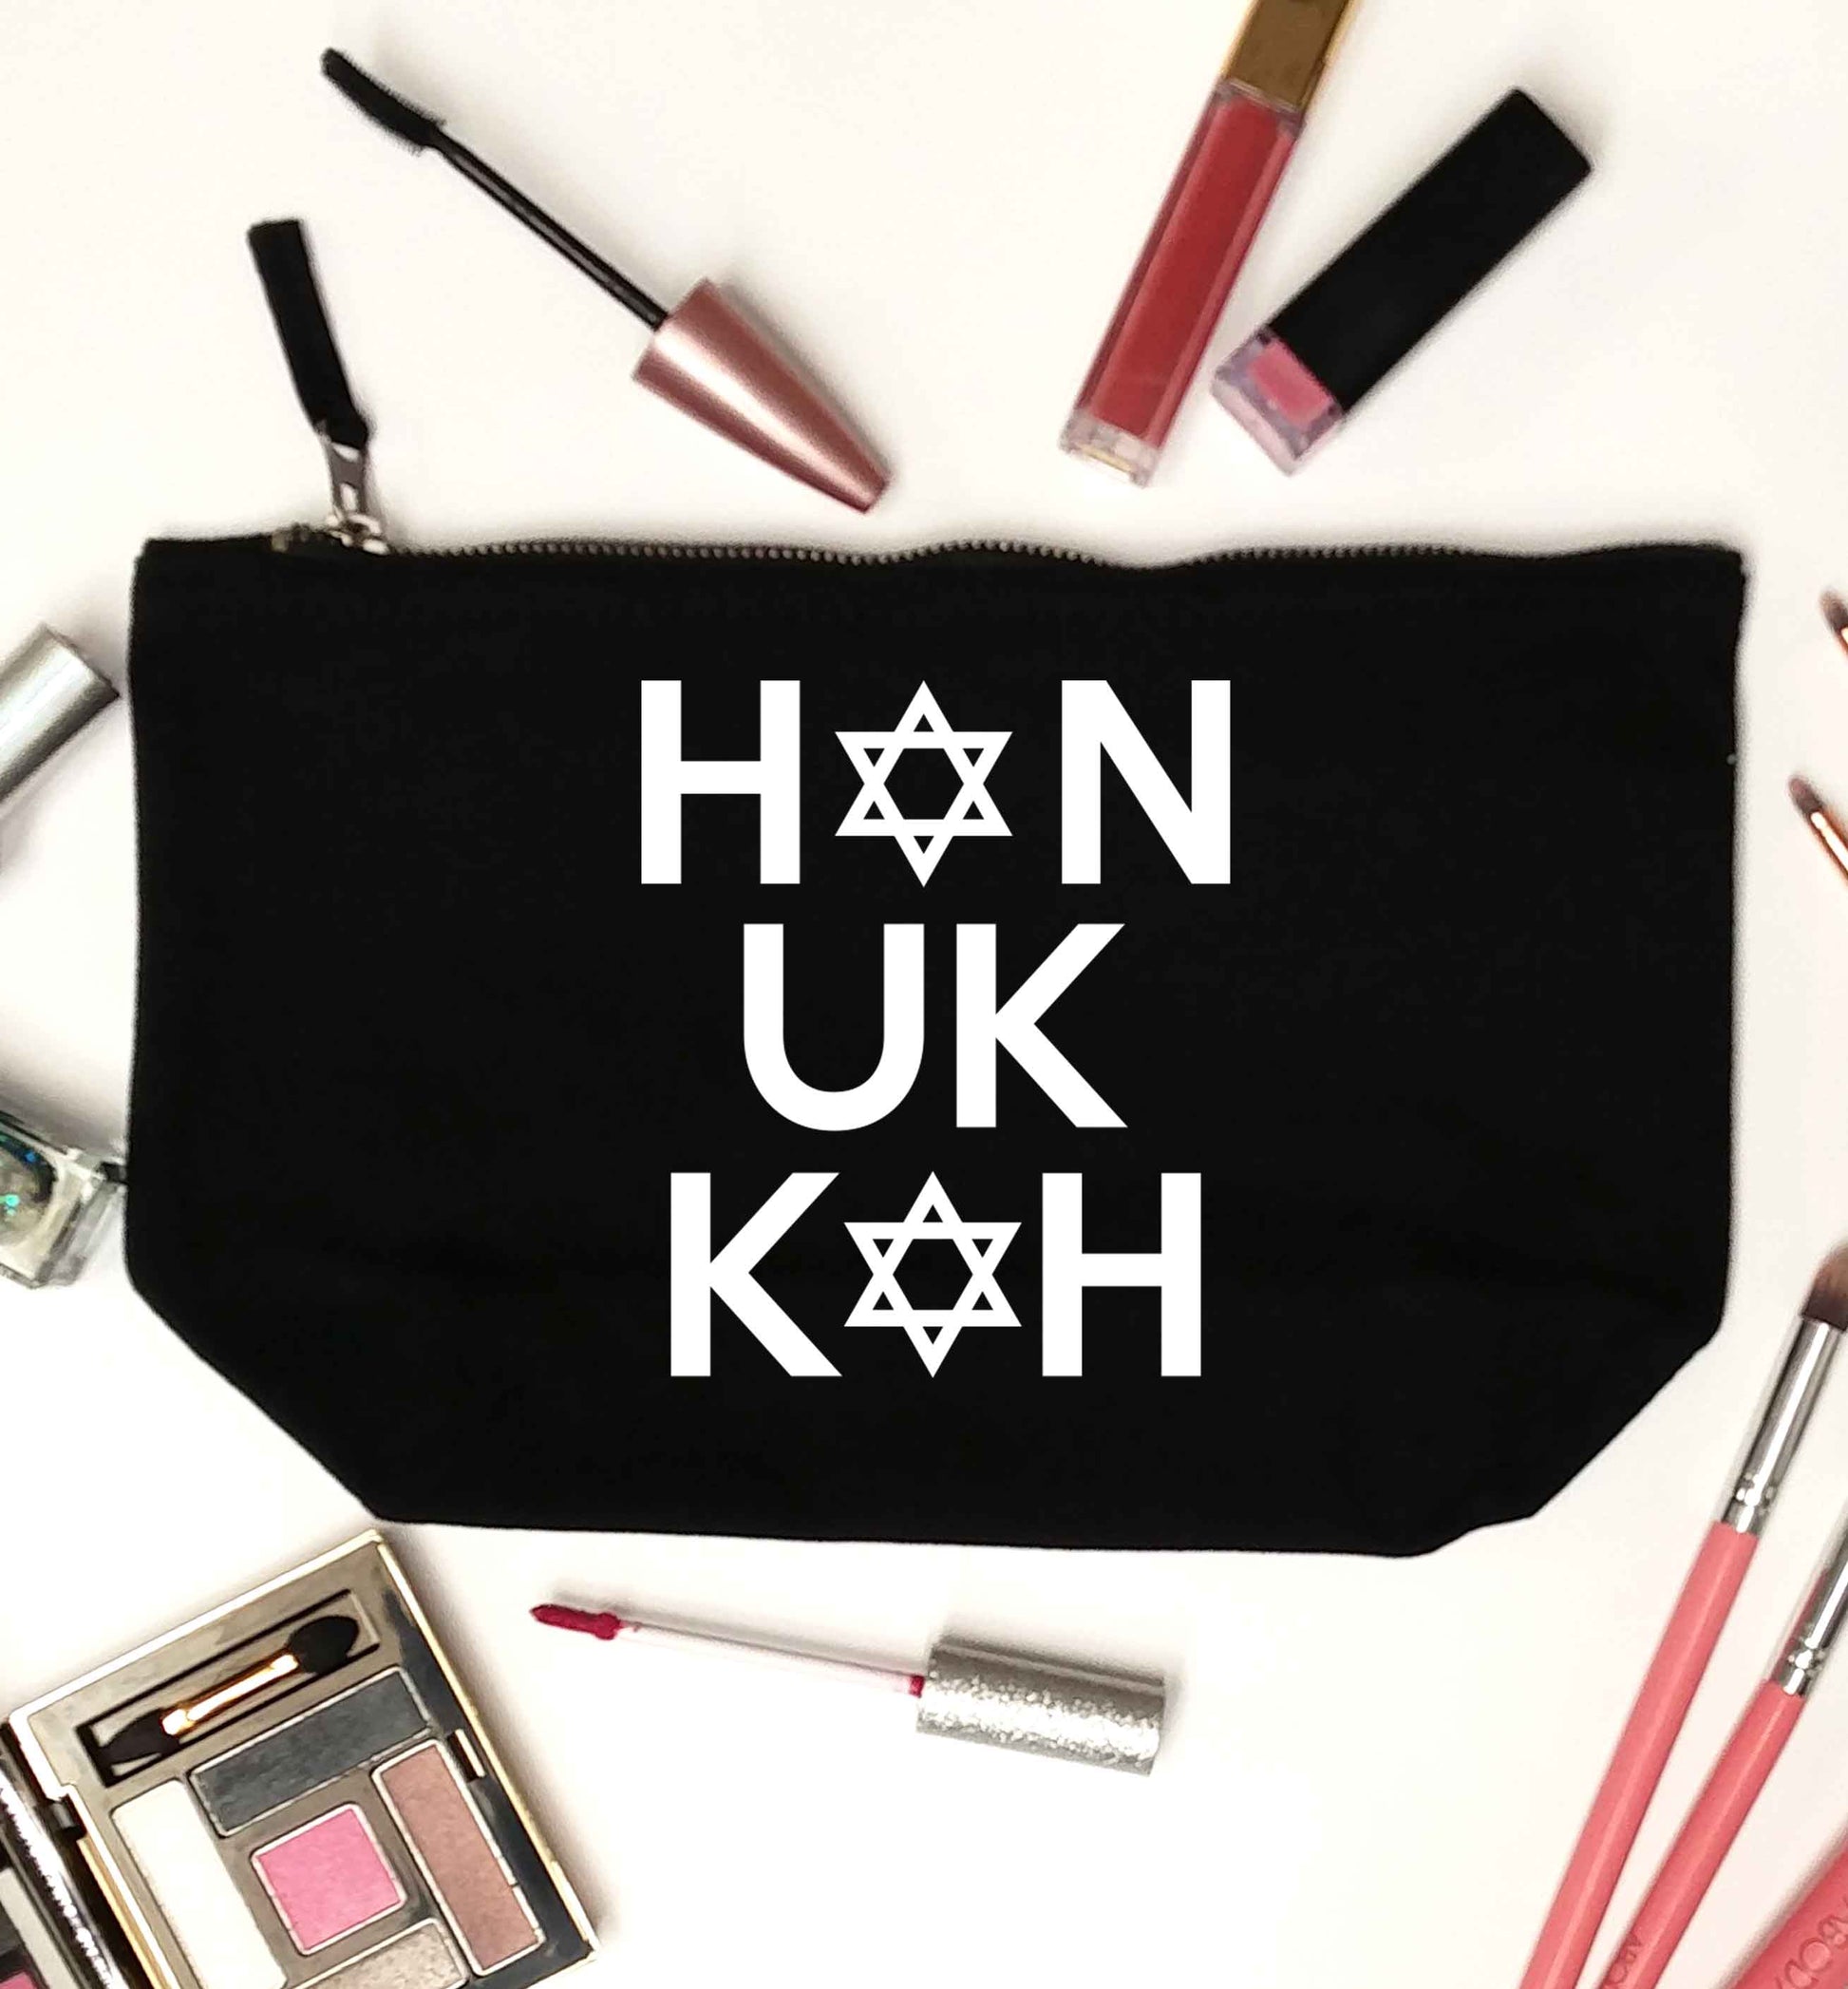 Han uk kah  Hanukkah star of david black makeup bag